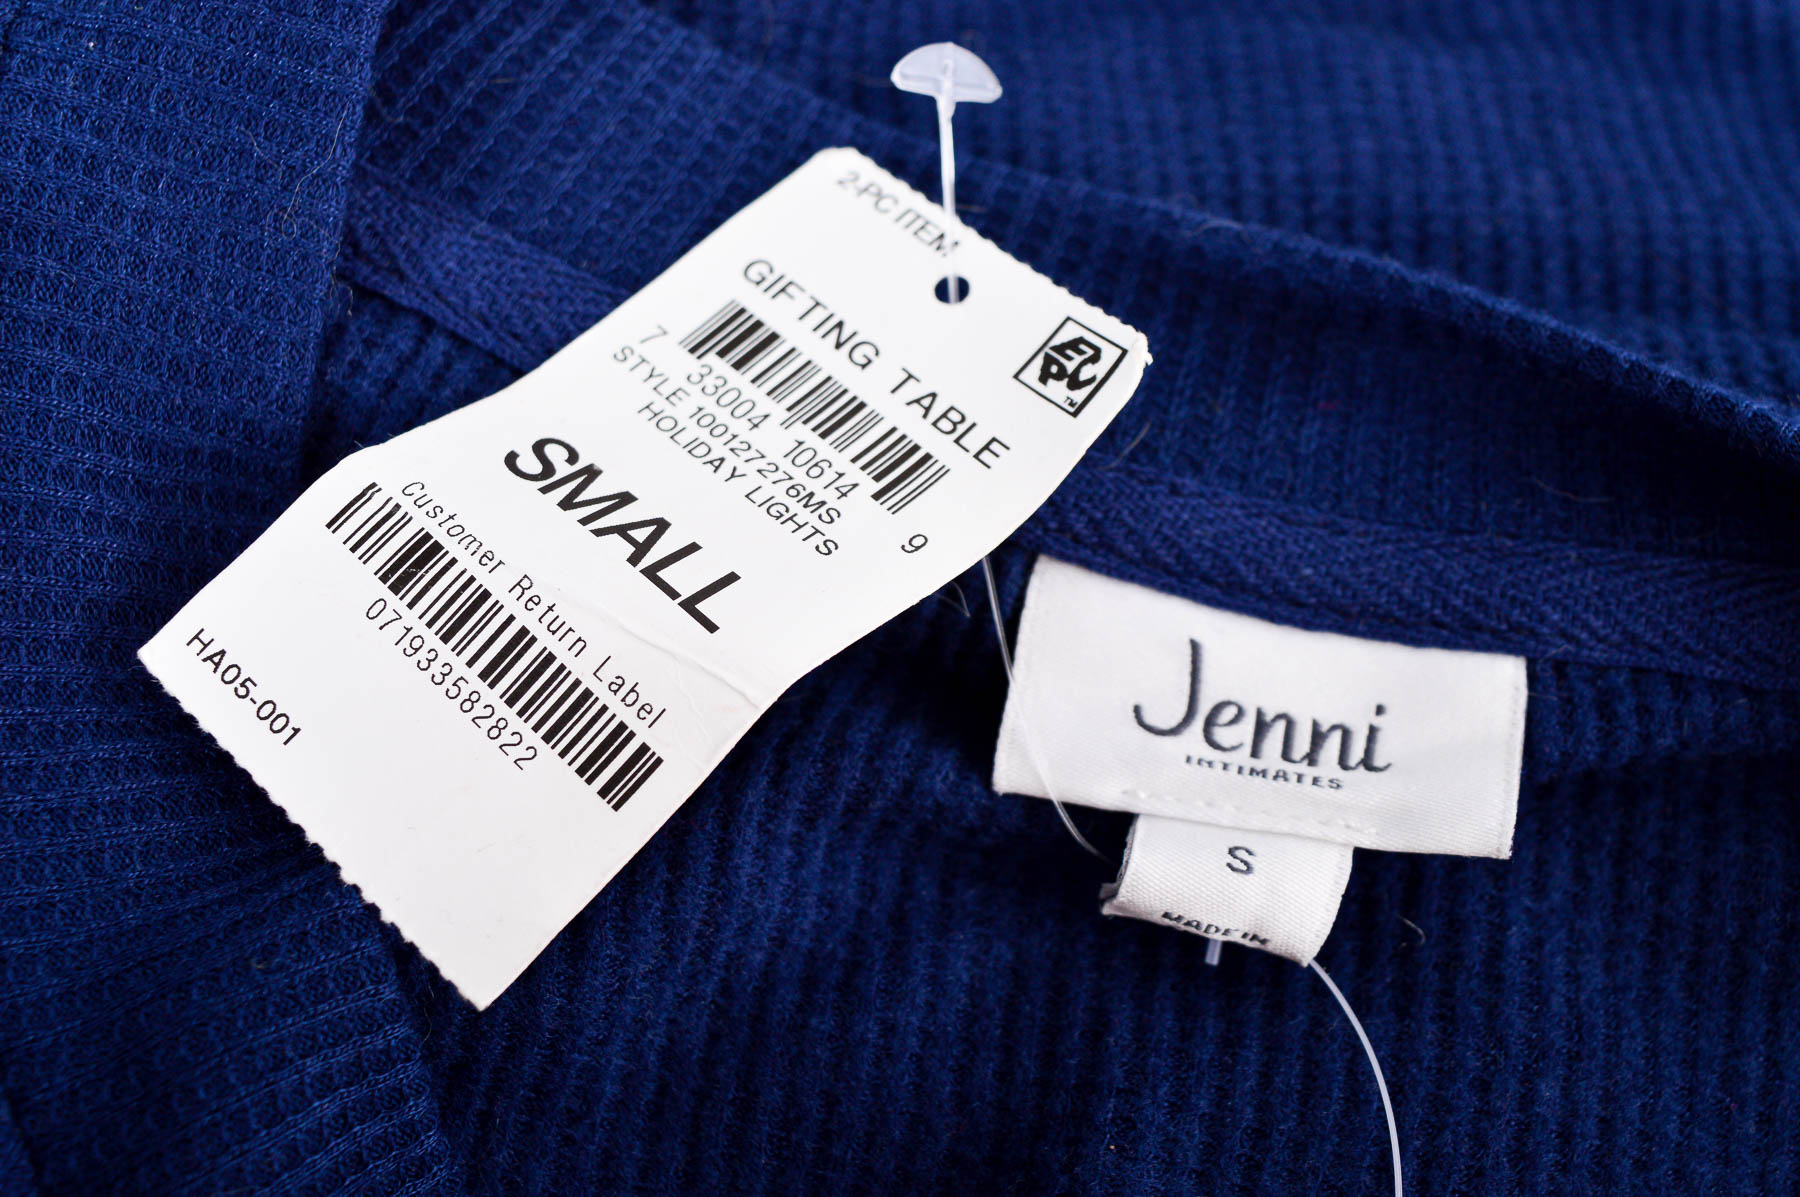 Γυναικεία μπλούζα - Jenni - 2